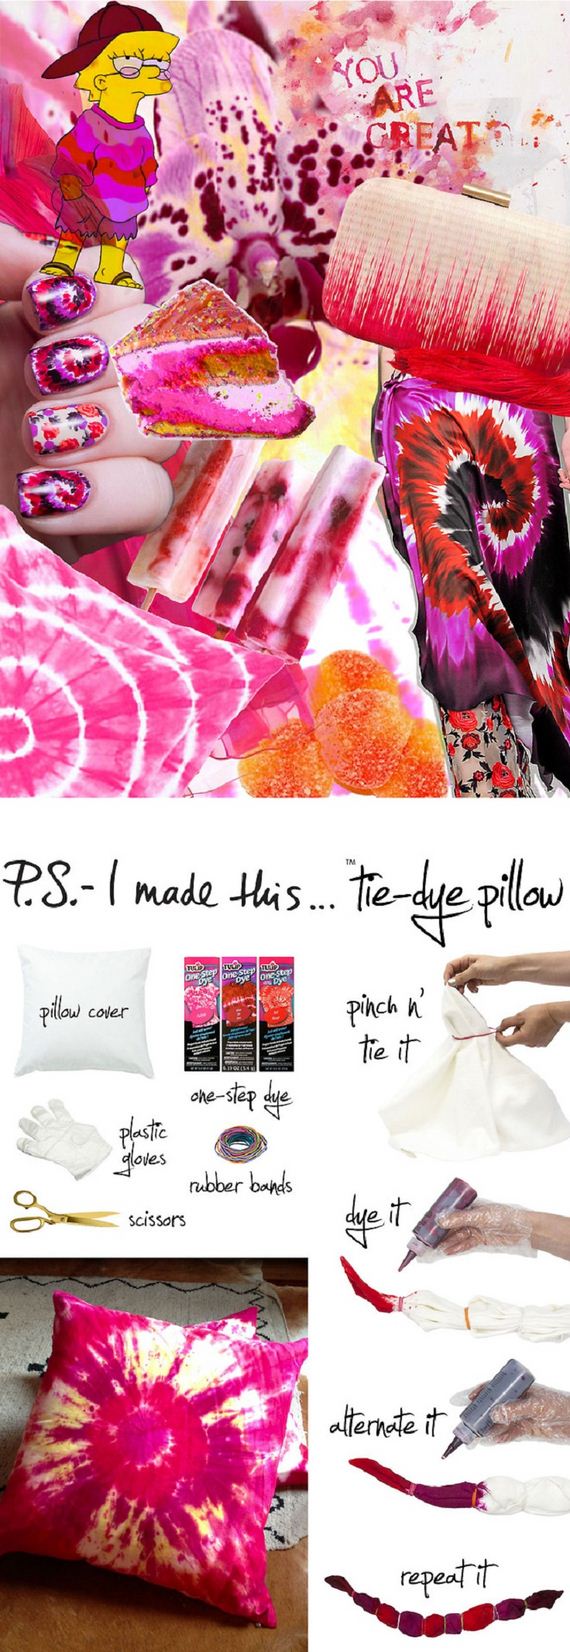 10-diy-pillows